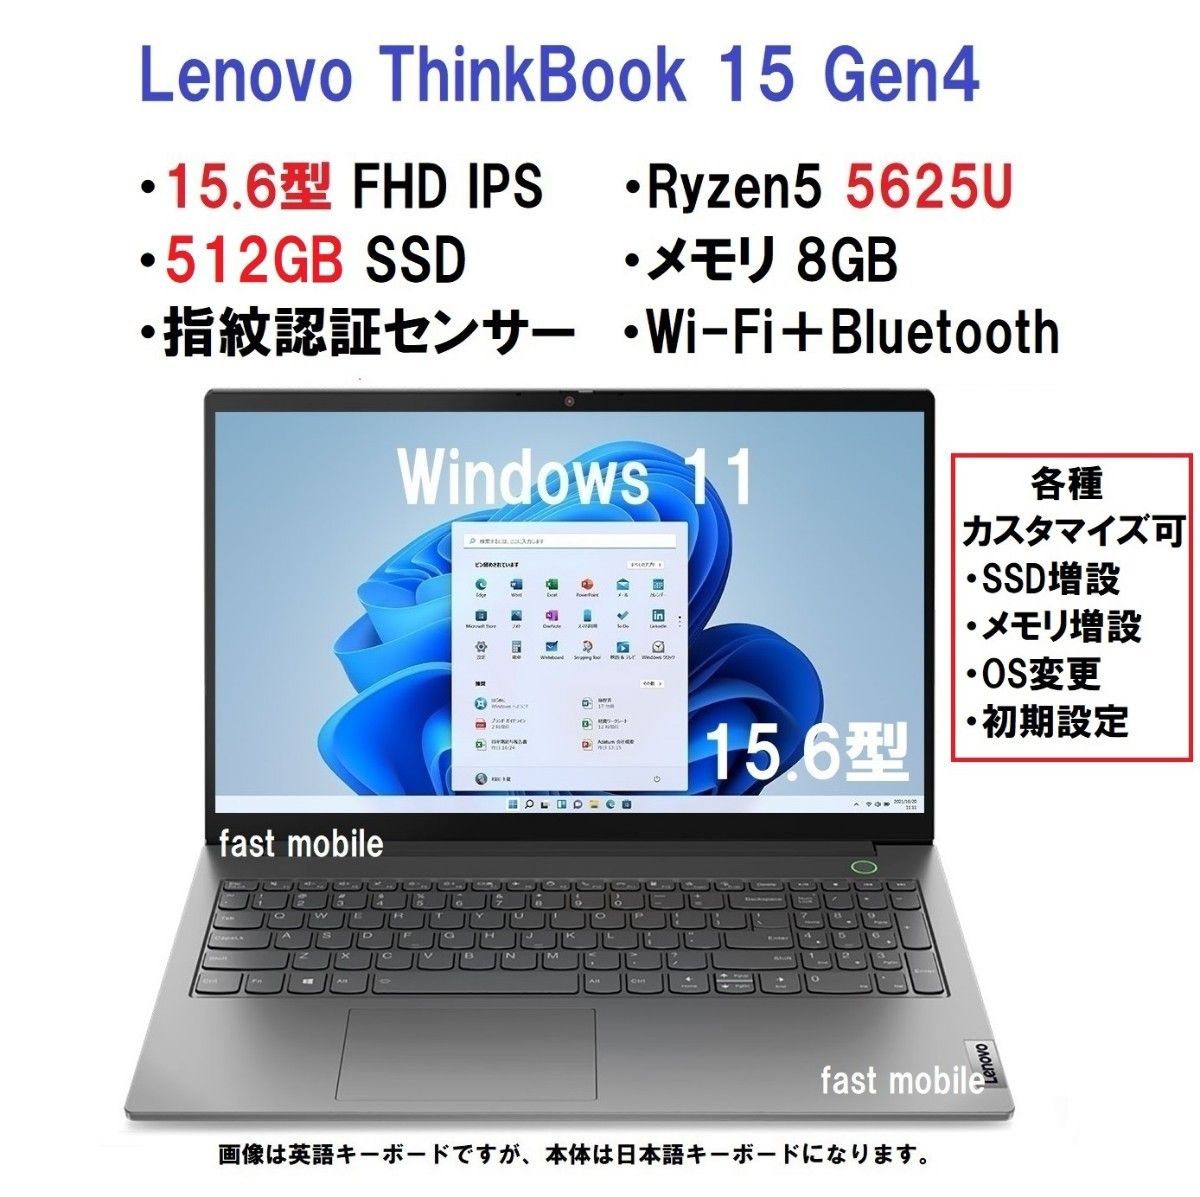 グランドセール 新品 Ryzen5 Lenovo ThinkBook 超高速(20GBメモリ